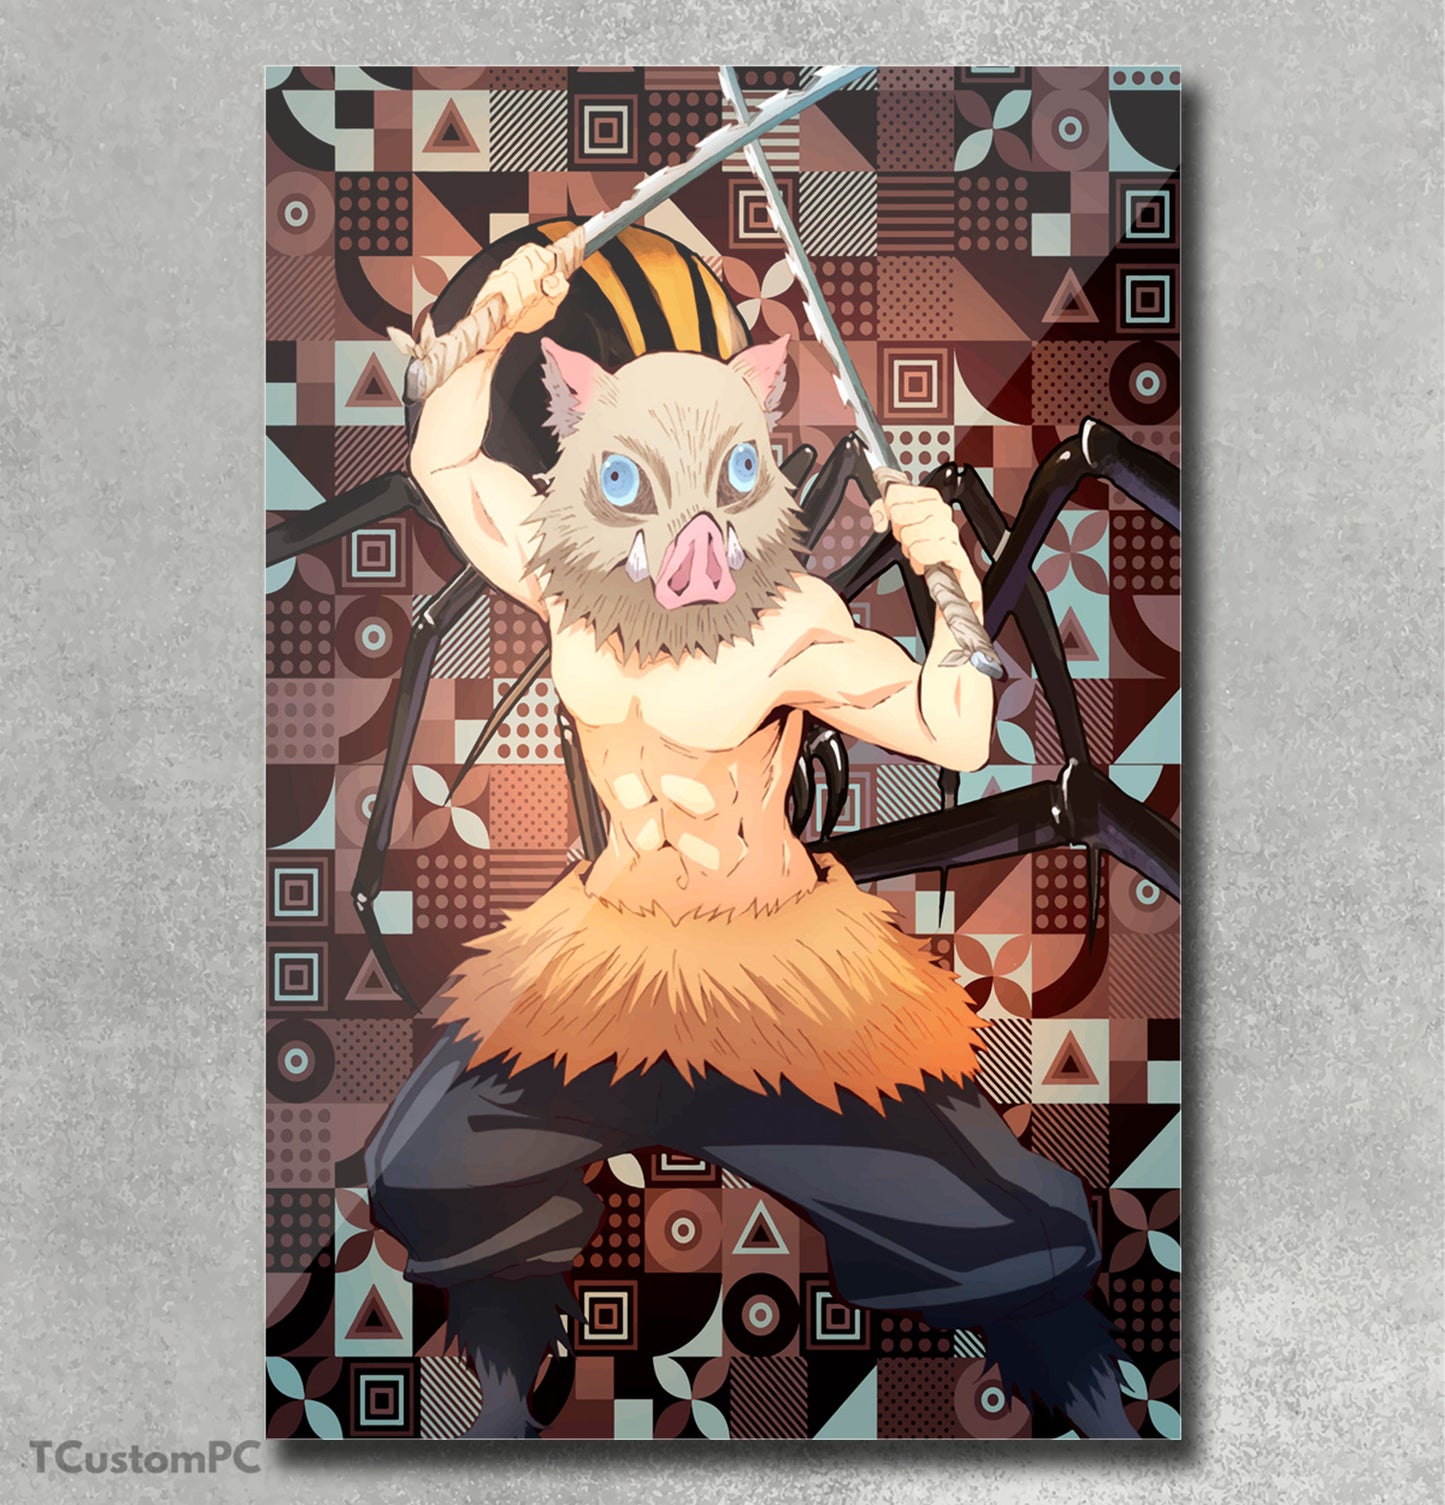 Demon Slayer Inosuke Hashibira painting